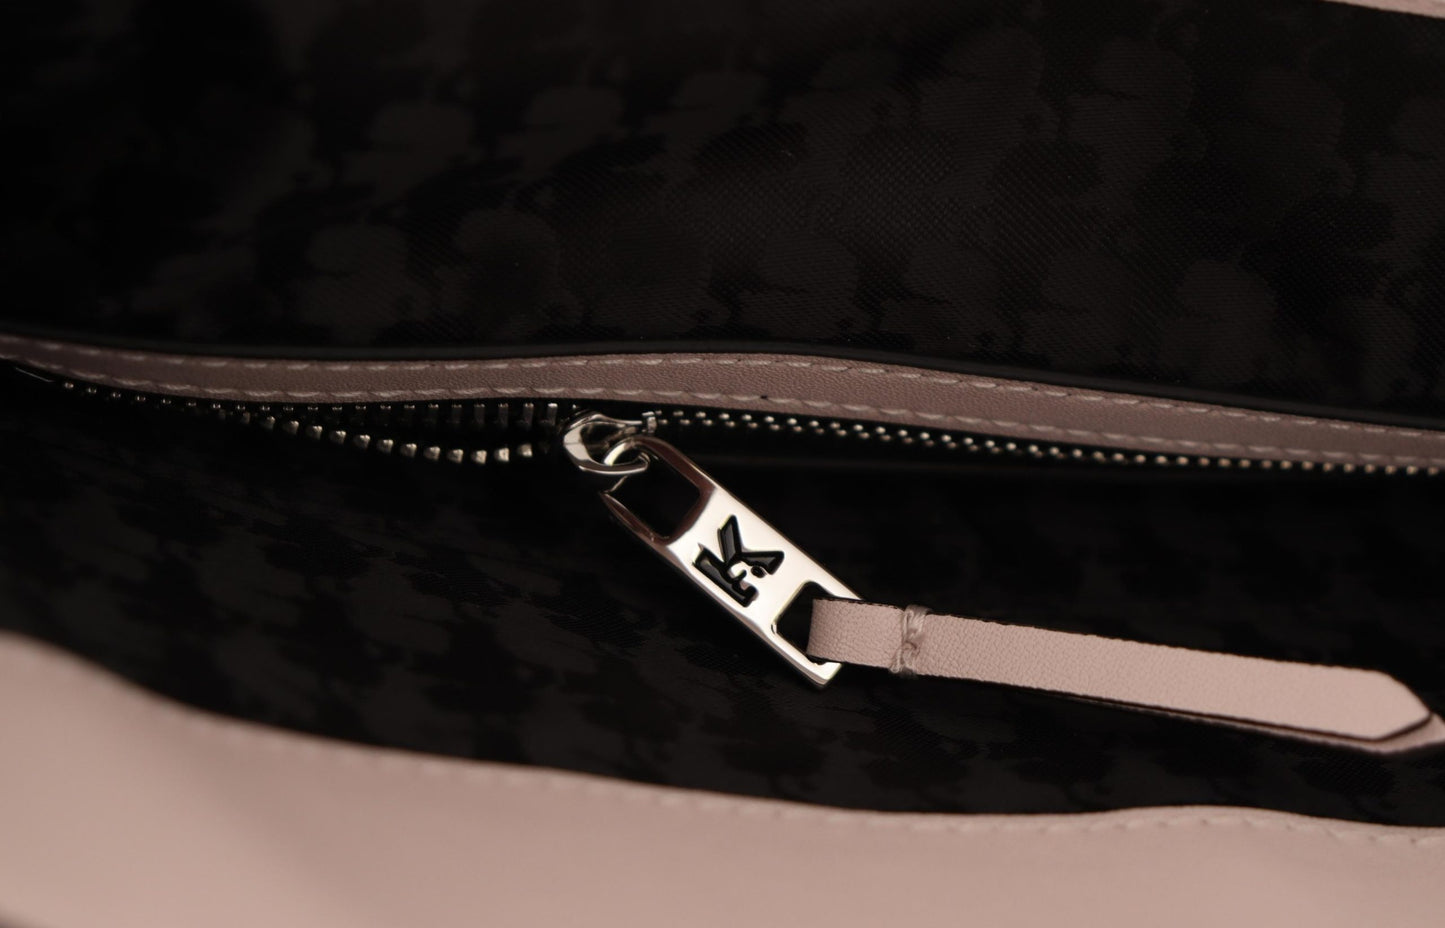 Karl Lagerfeld Light Pink Mauve Leather Shoulder Bag - DEA STILOSA MILANO